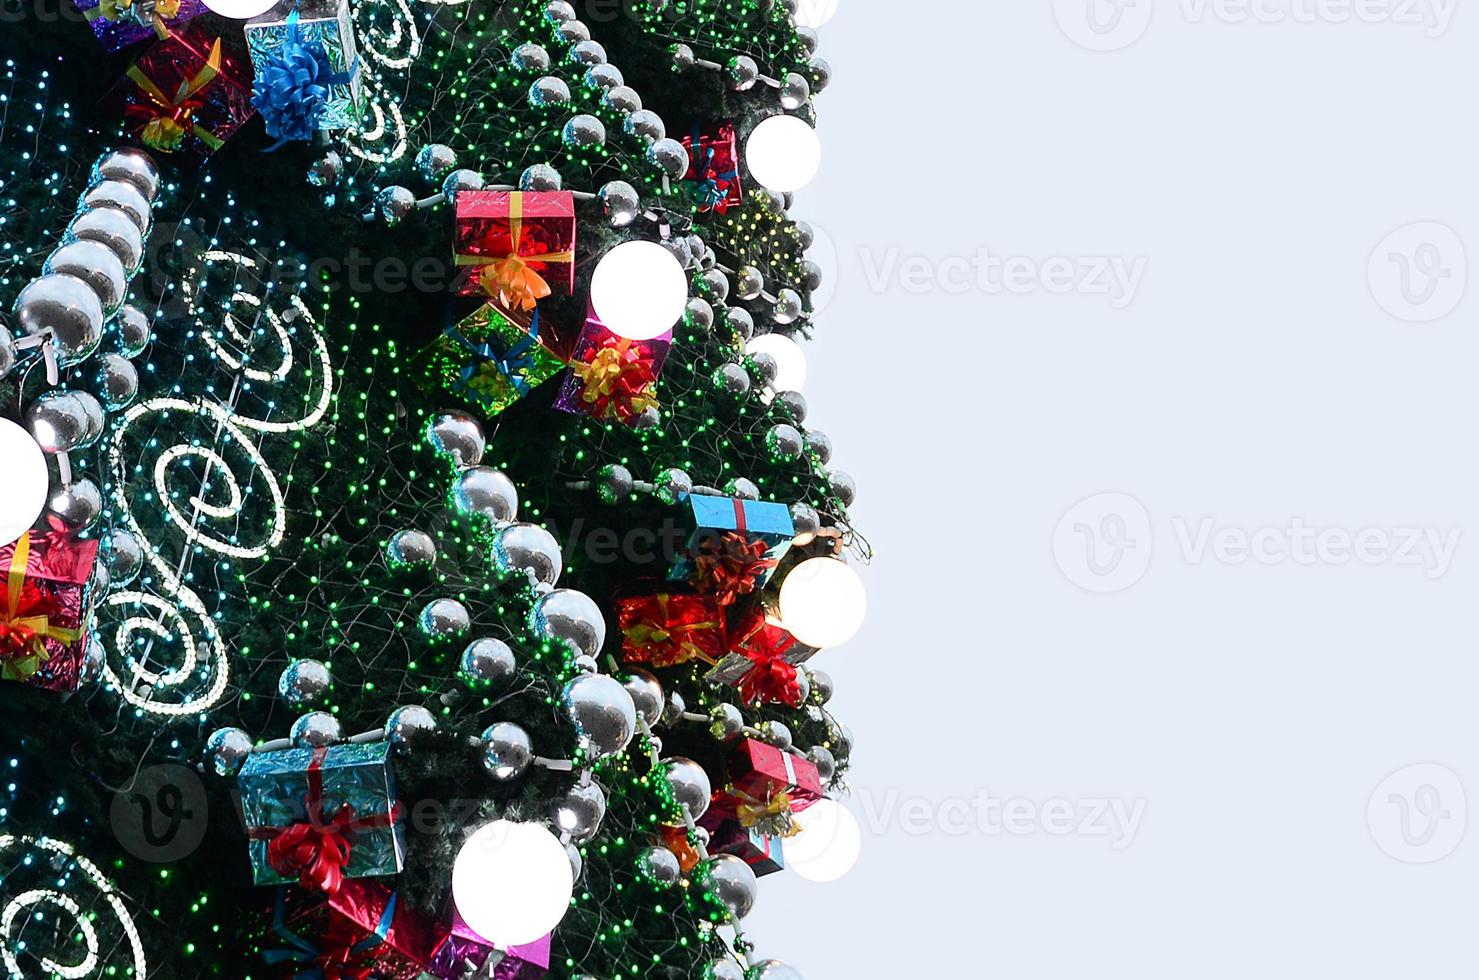 en fragment av en enorm jul träd med många ornament, gåva lådor och lysande lampor. Foto av en dekorerad jul träd närbild med kopia Plats